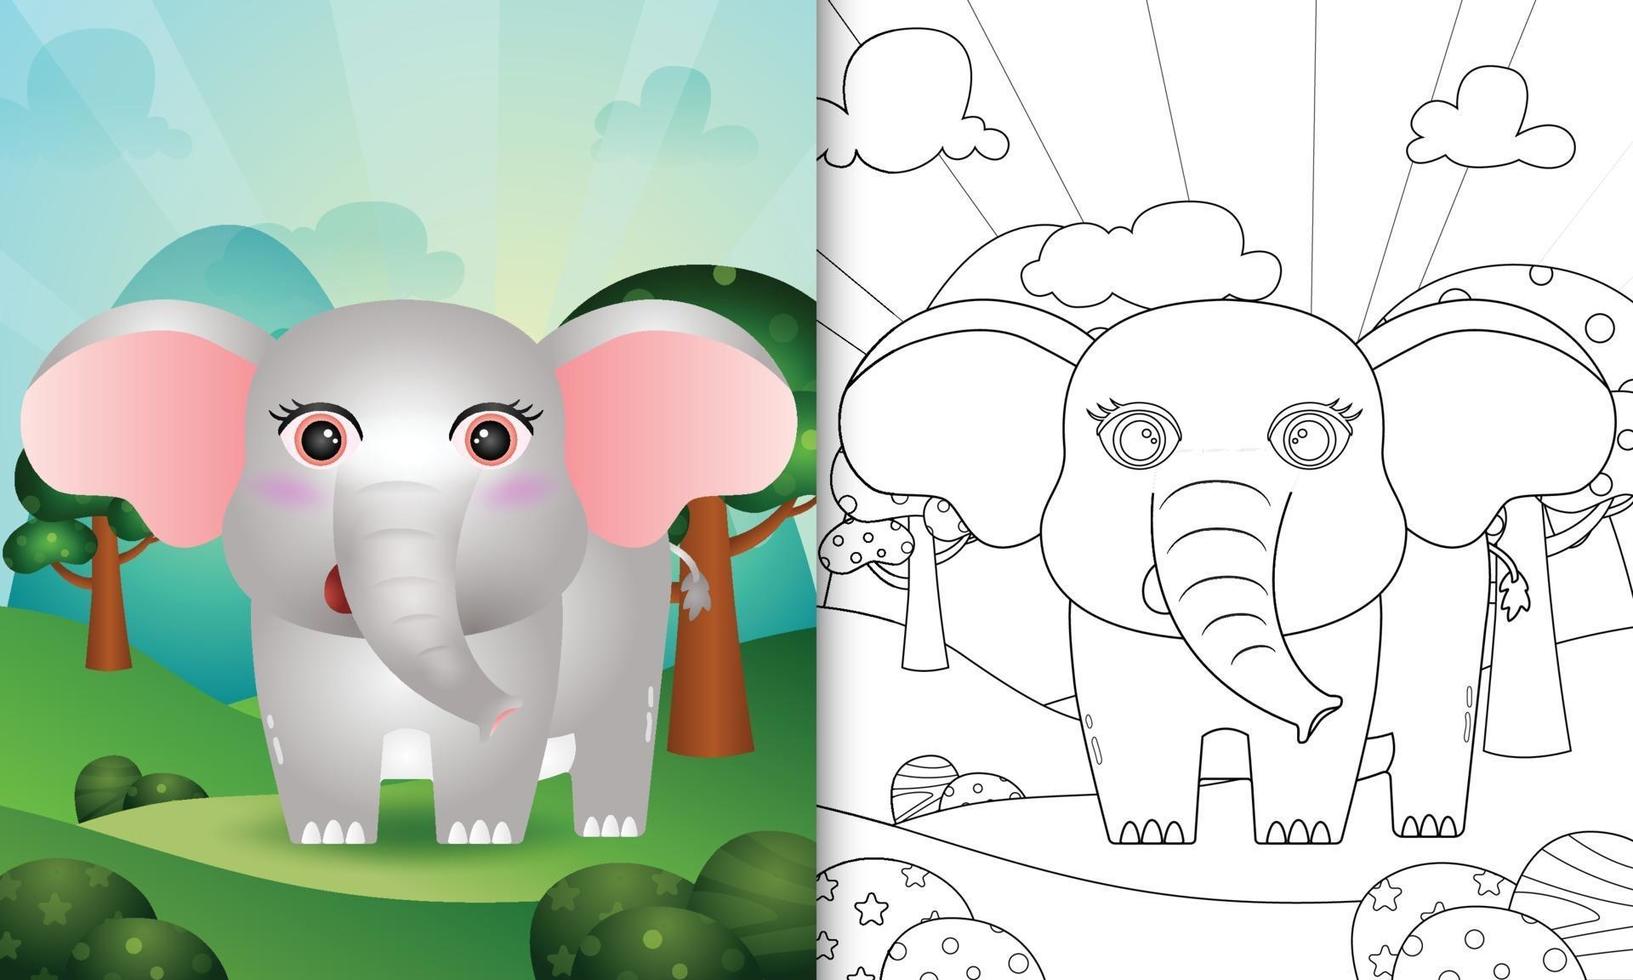 kleurboek voor kinderen met een schattige illustratie van het olifantenkarakter vector